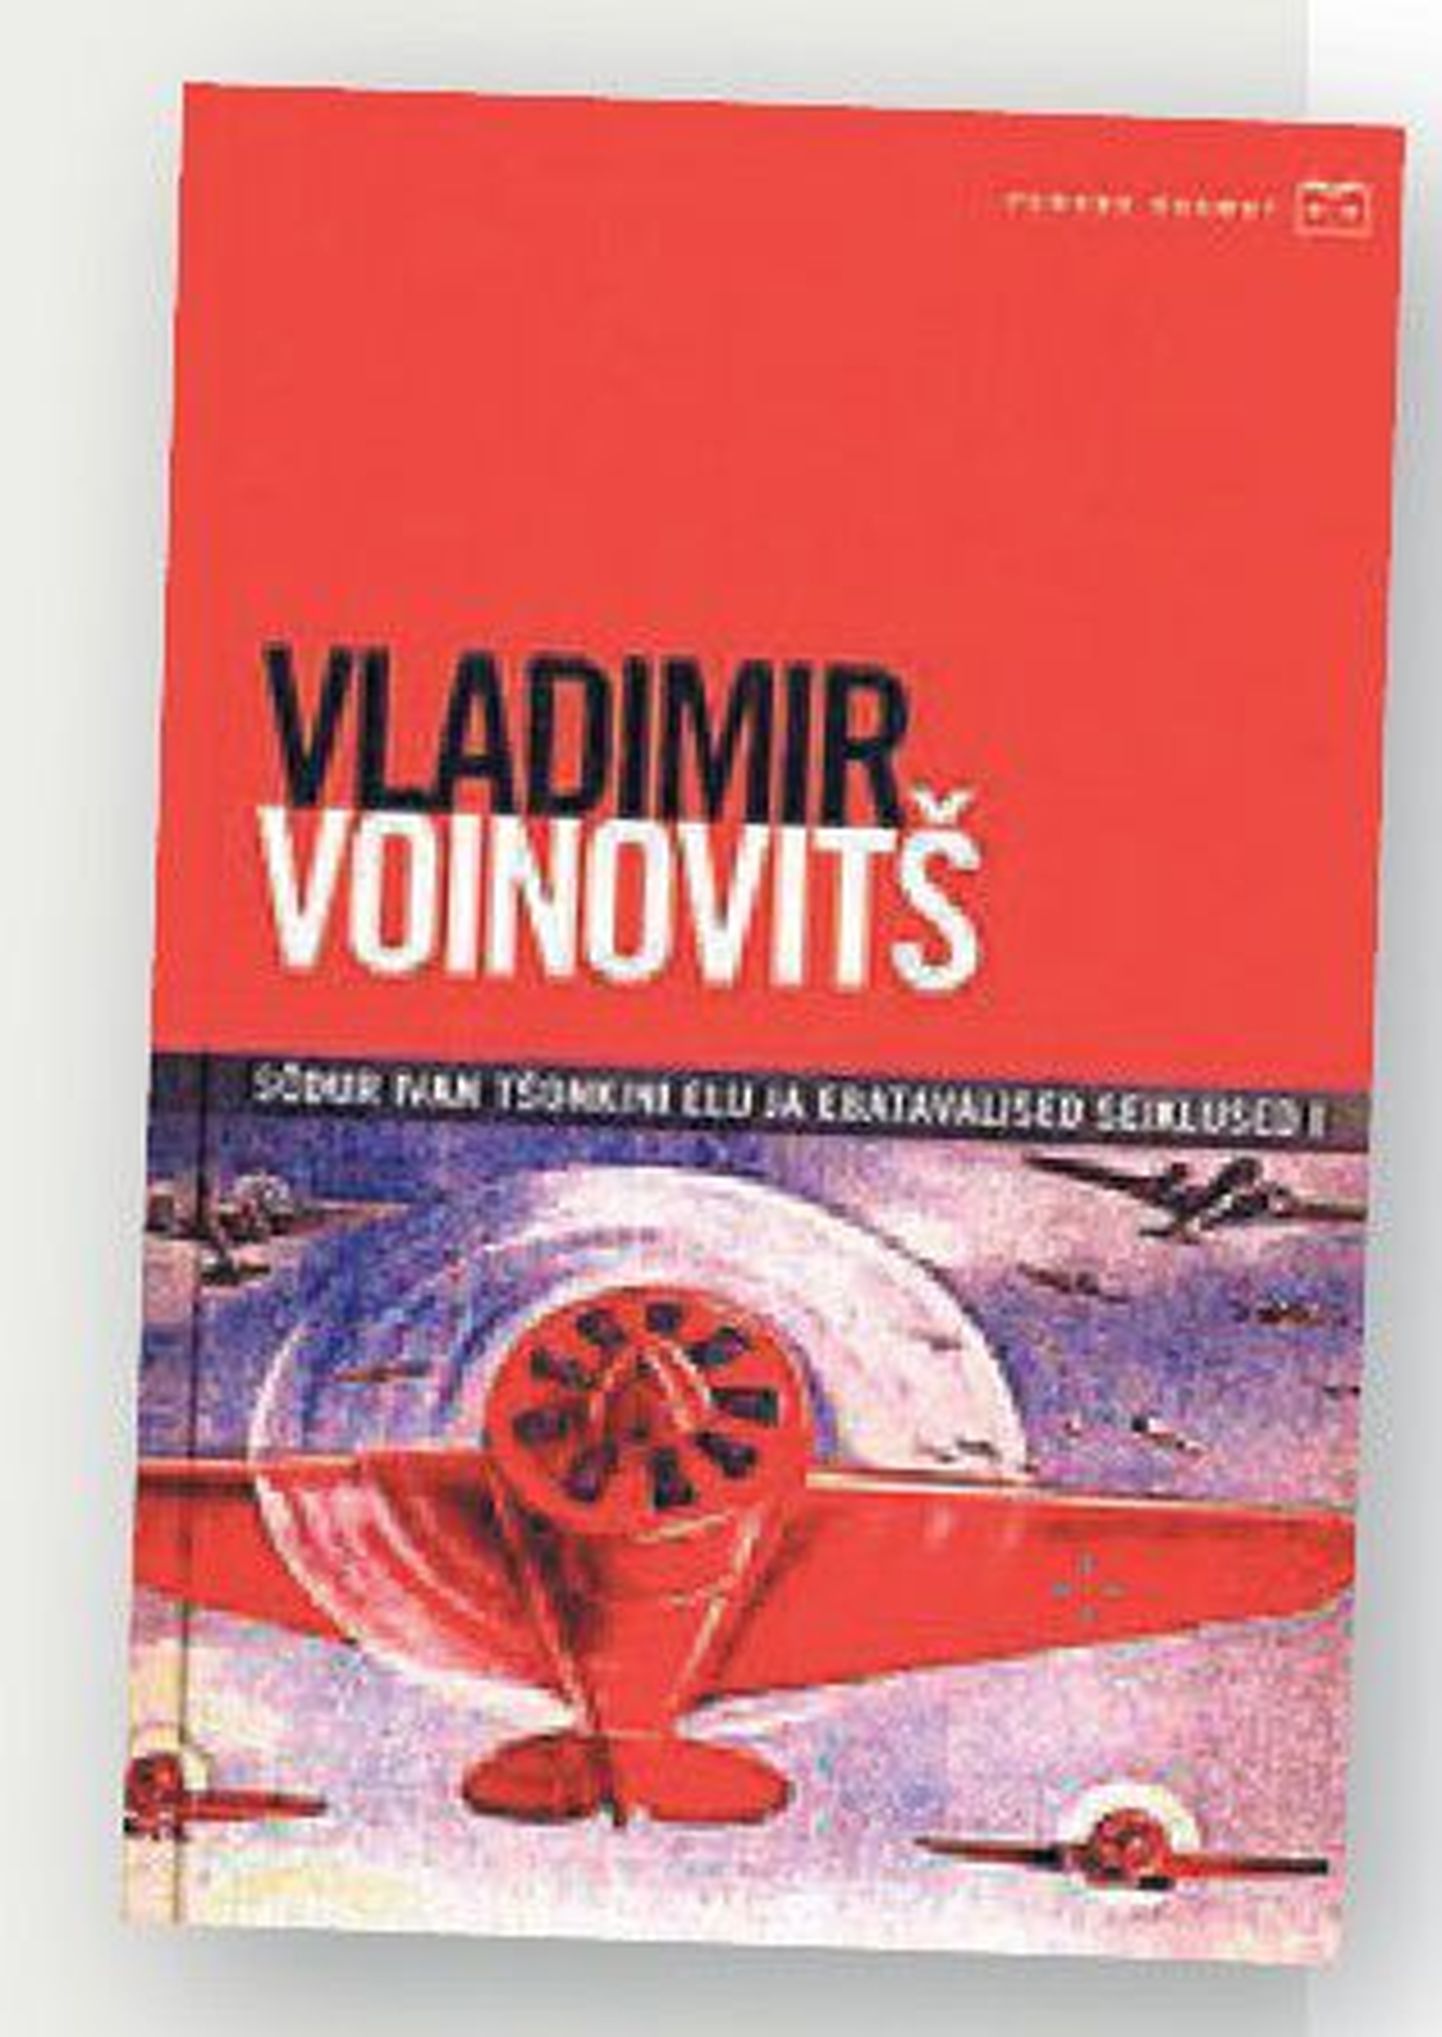 Raamat
Vladimir Voinovitš
«Sõdur Ivan Tšonkini elu ja ­eba­tavalised seiklused I»
Kirjastus ­Tänapäev, 
tõlkinud Jüri Ojamaa